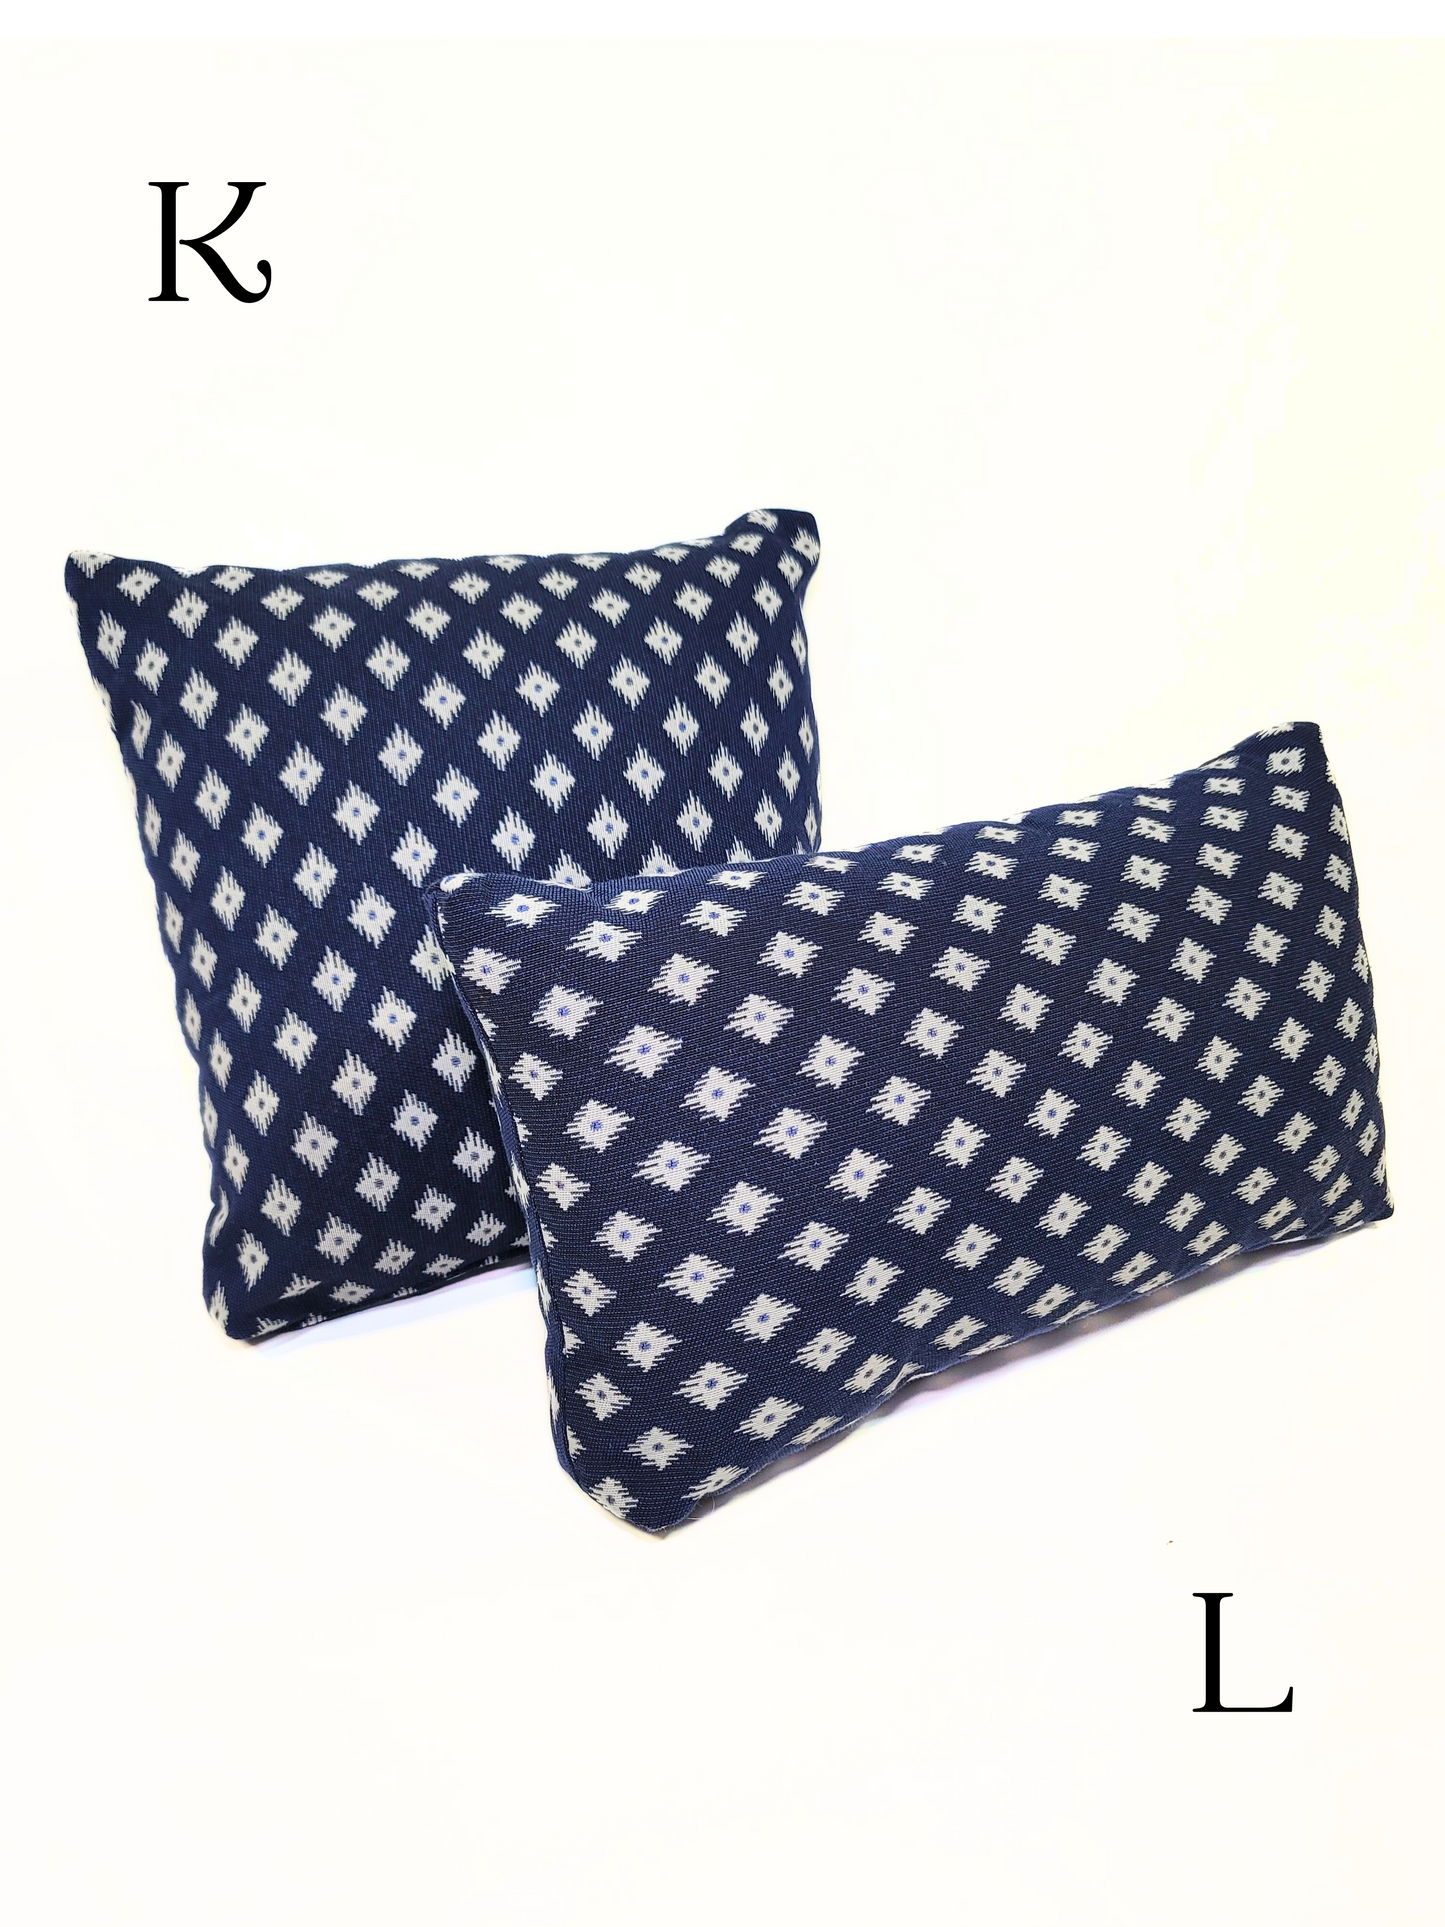 Premium Sunbrella 'Barcelona' Indoor/Outdoor Toss Pillow Cover